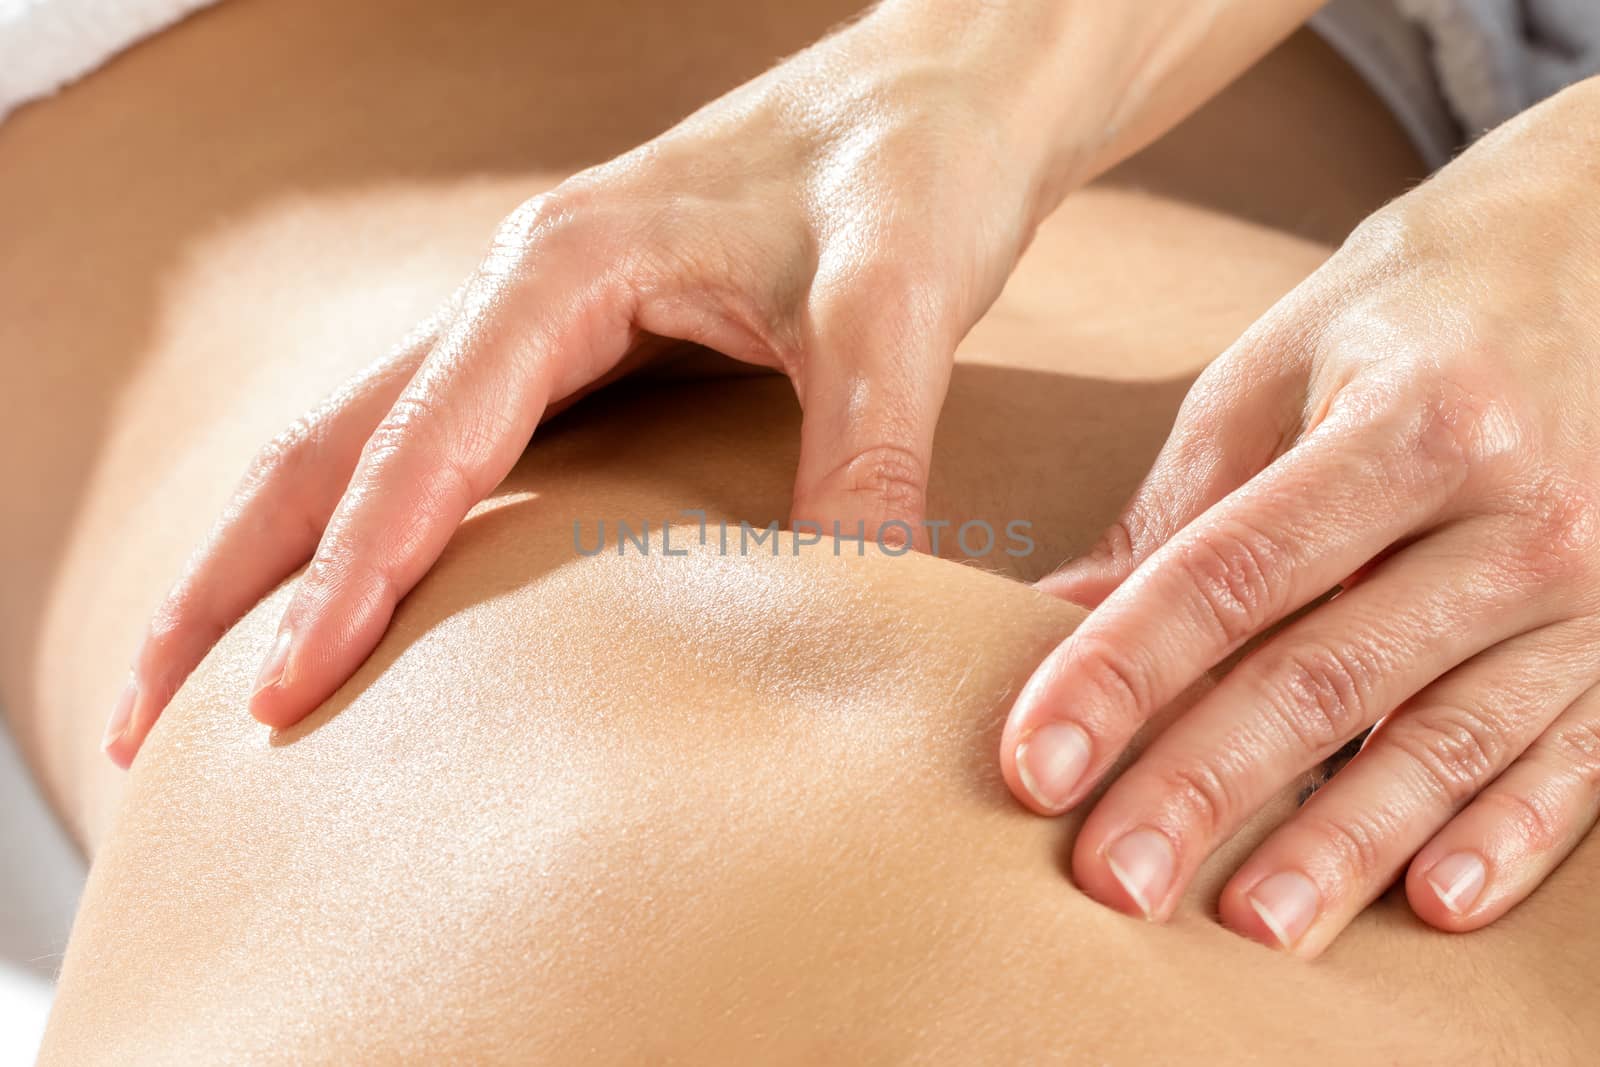 Detail of hands massaging shoulder blade. by karelnoppe